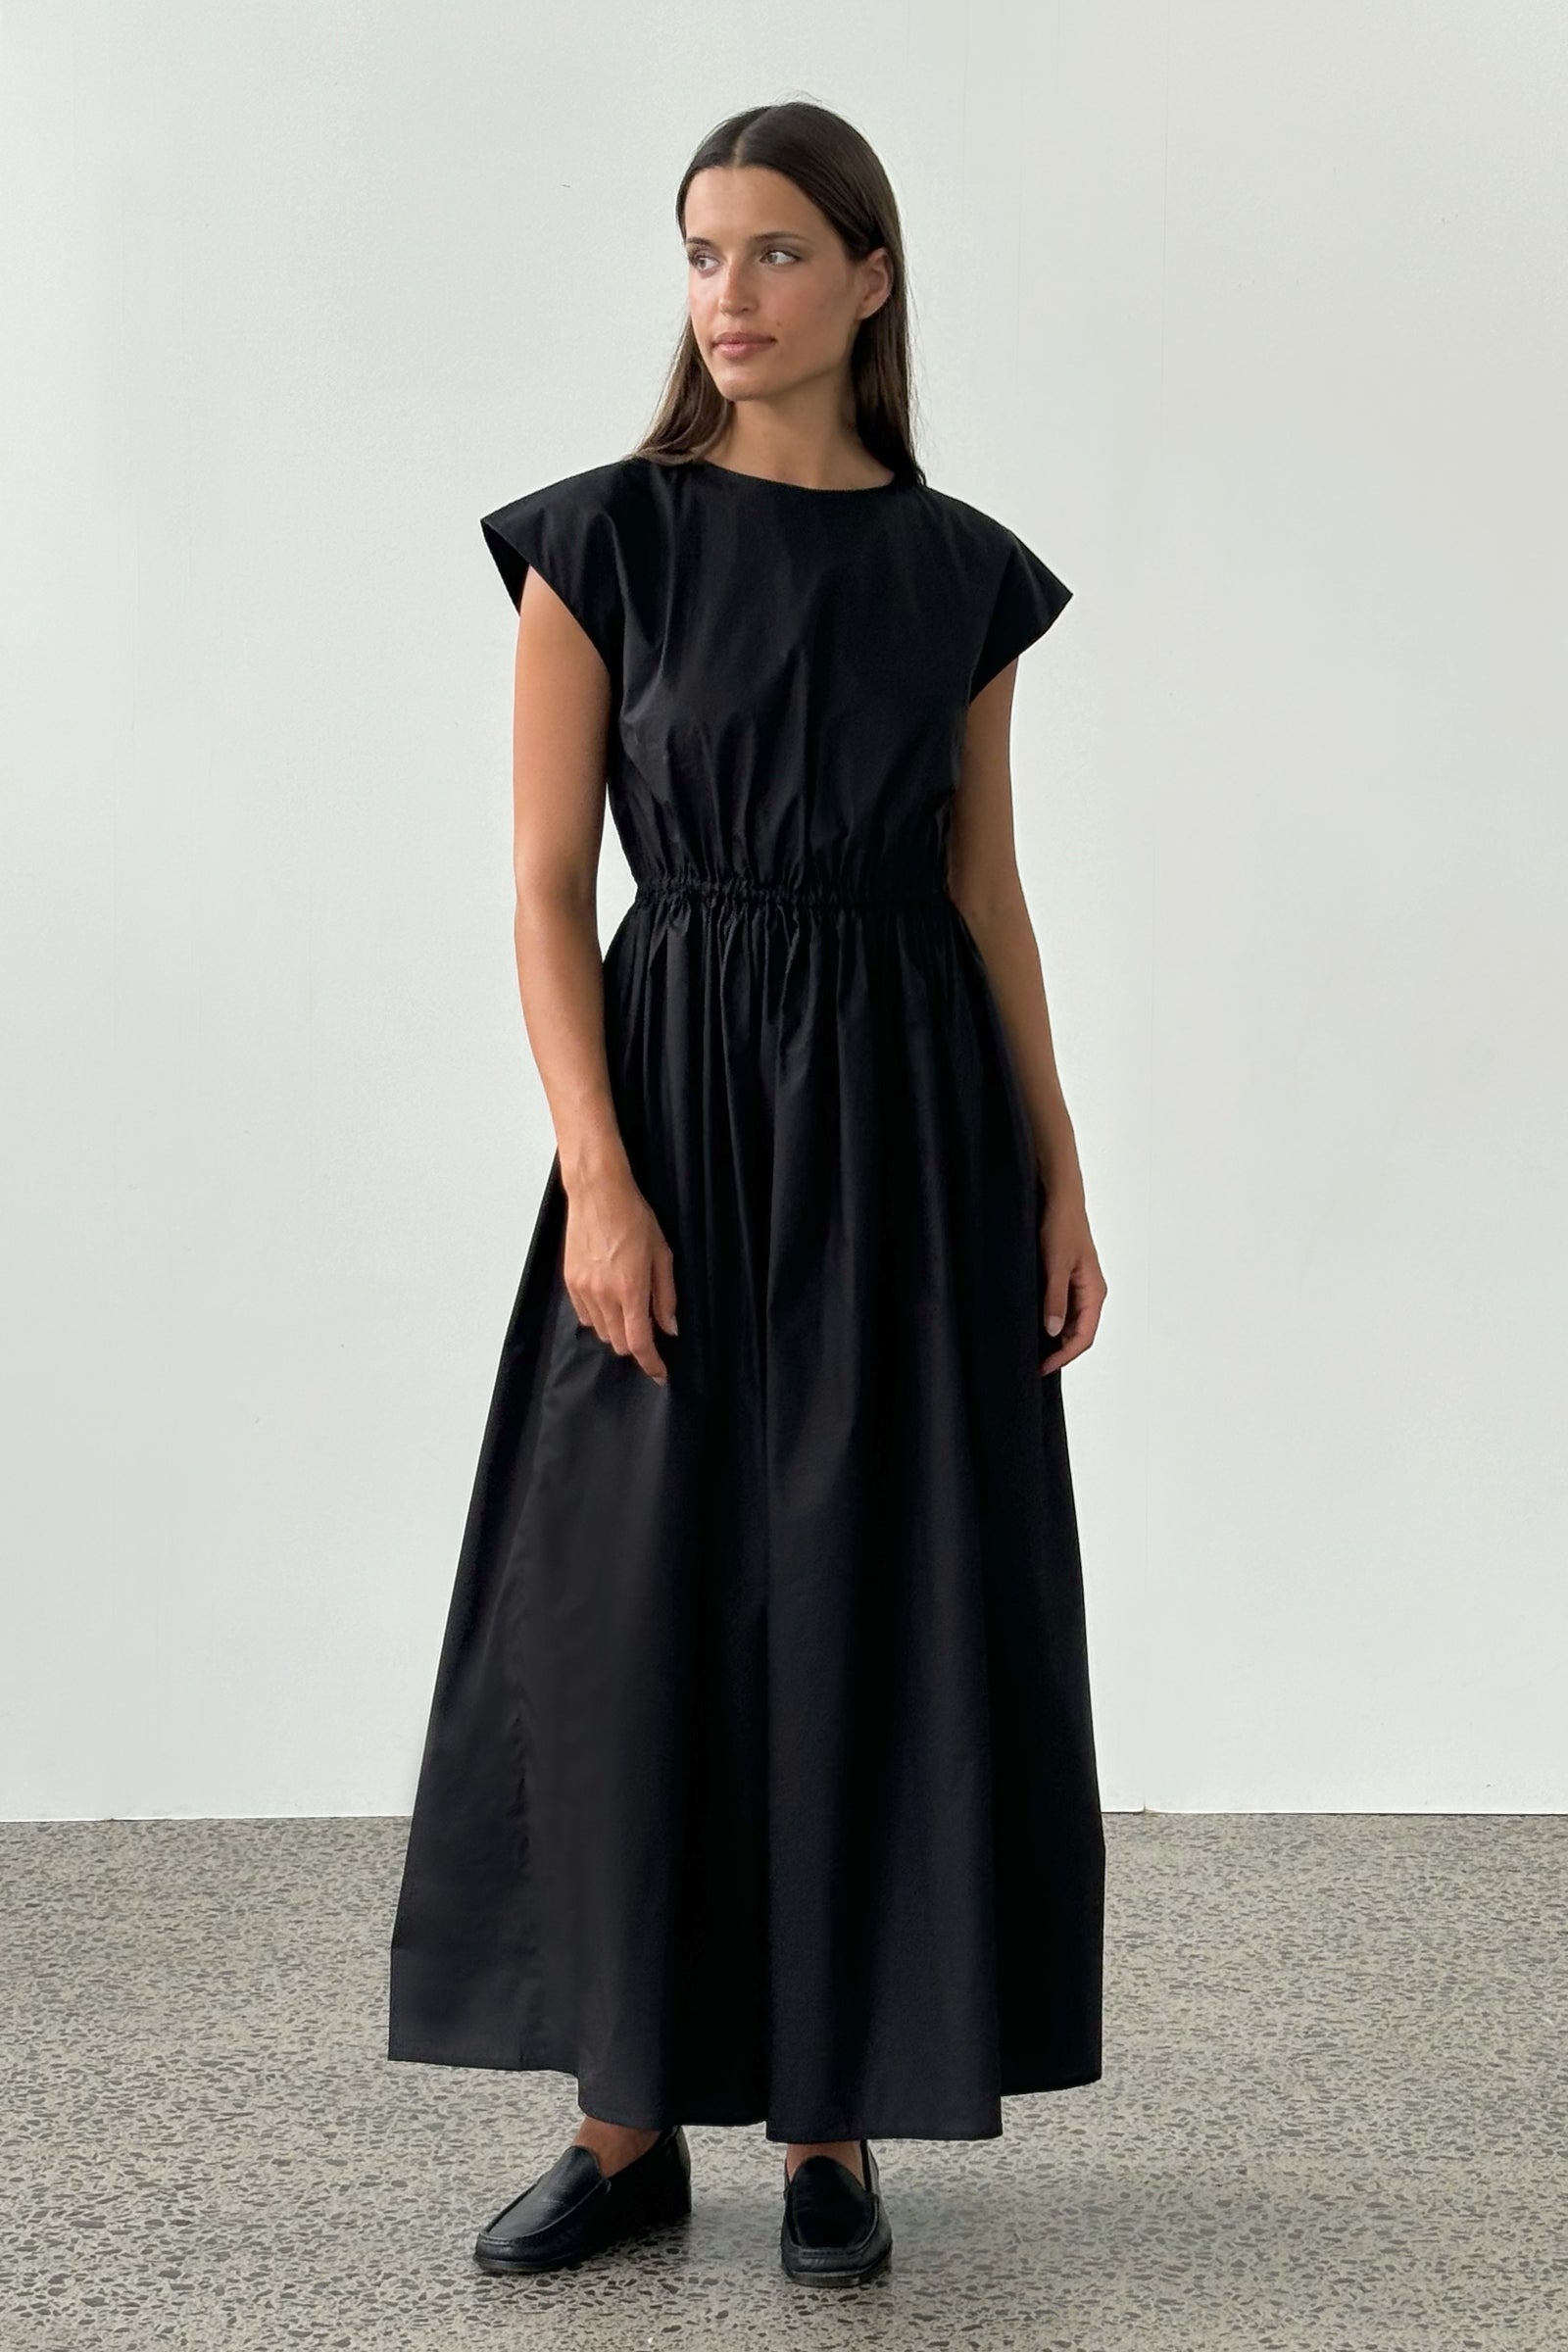 Vienna Original Dress in Black